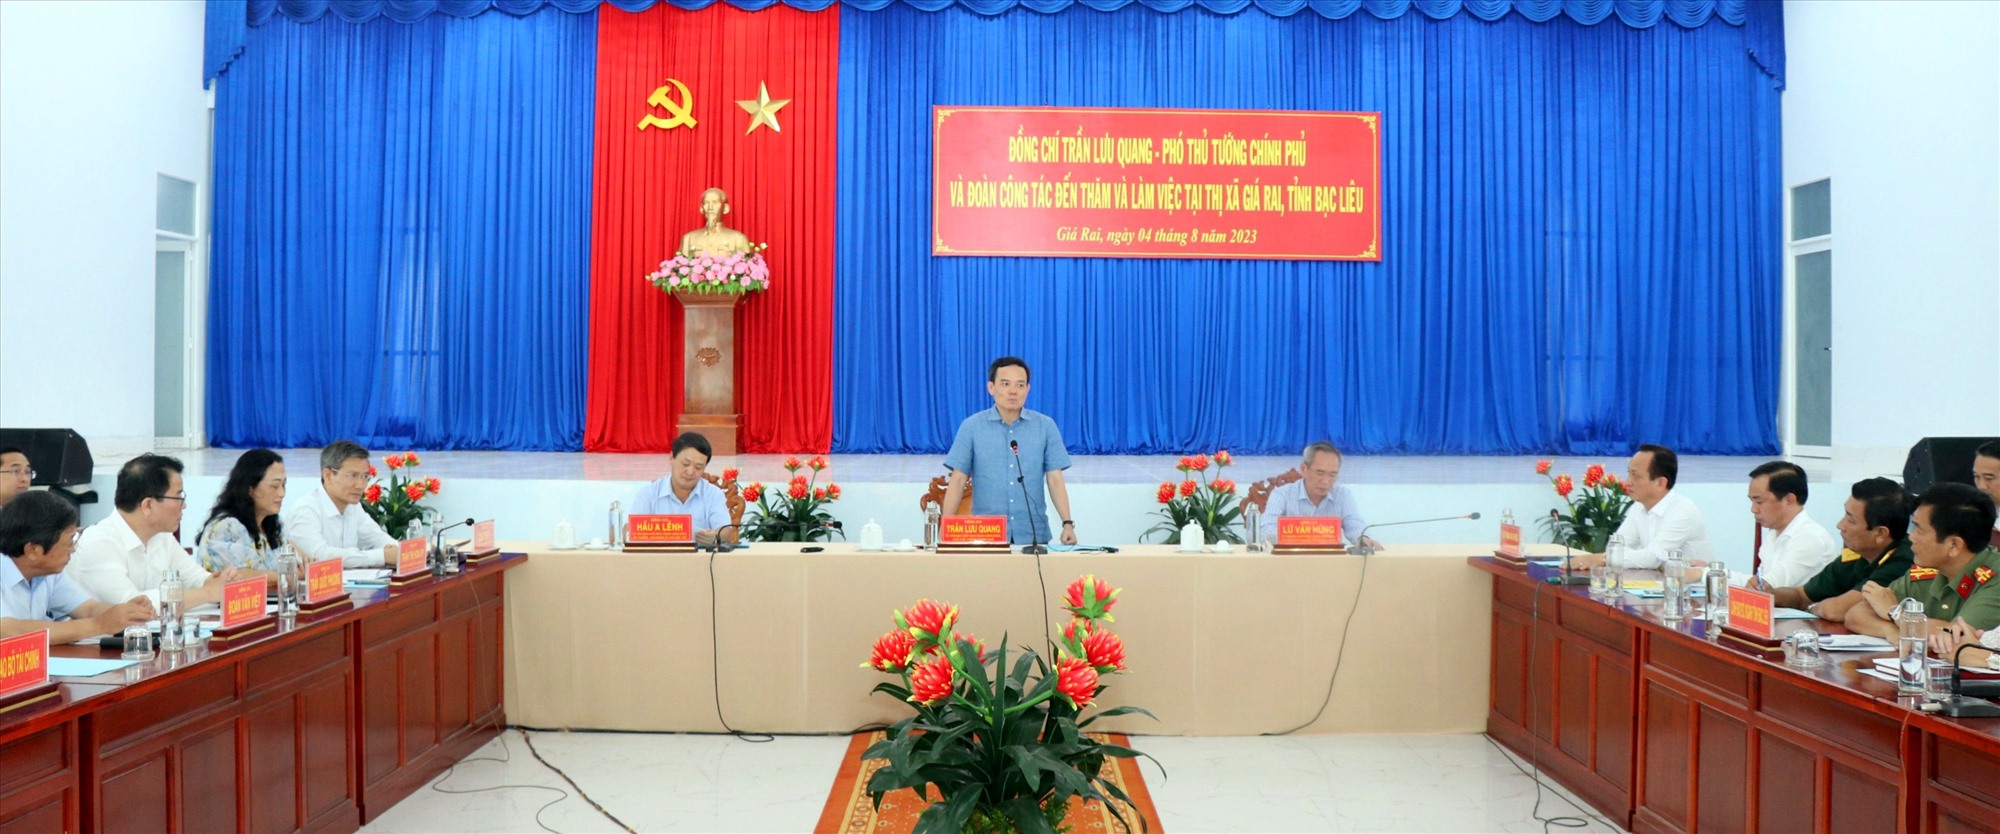 Sáng ngày 4.8, Phó thủ tướng Chính phủ Trần Lưu Quang làm việc với Thị xã Giá Rai, tỉnh Bạc Liêu về Chương trình mục tiêu quốc gia. Ảnh: Nhật Hồ